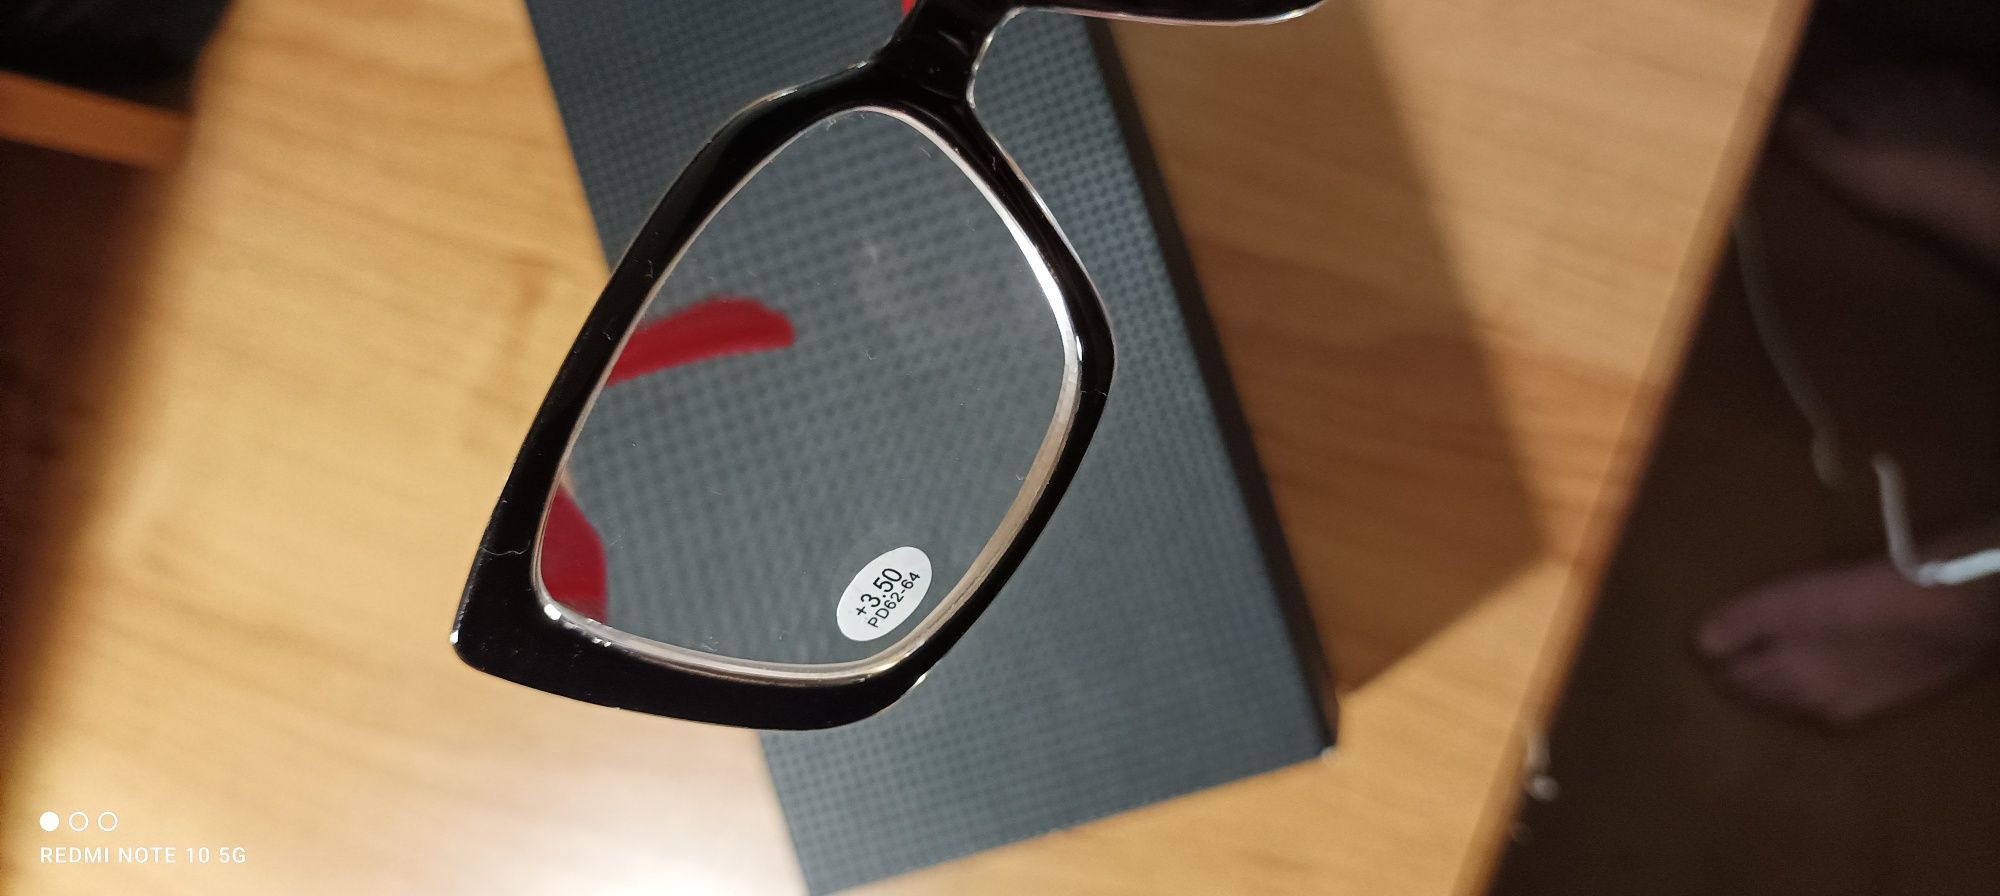 Продам стильные диоптрические очки +3.5